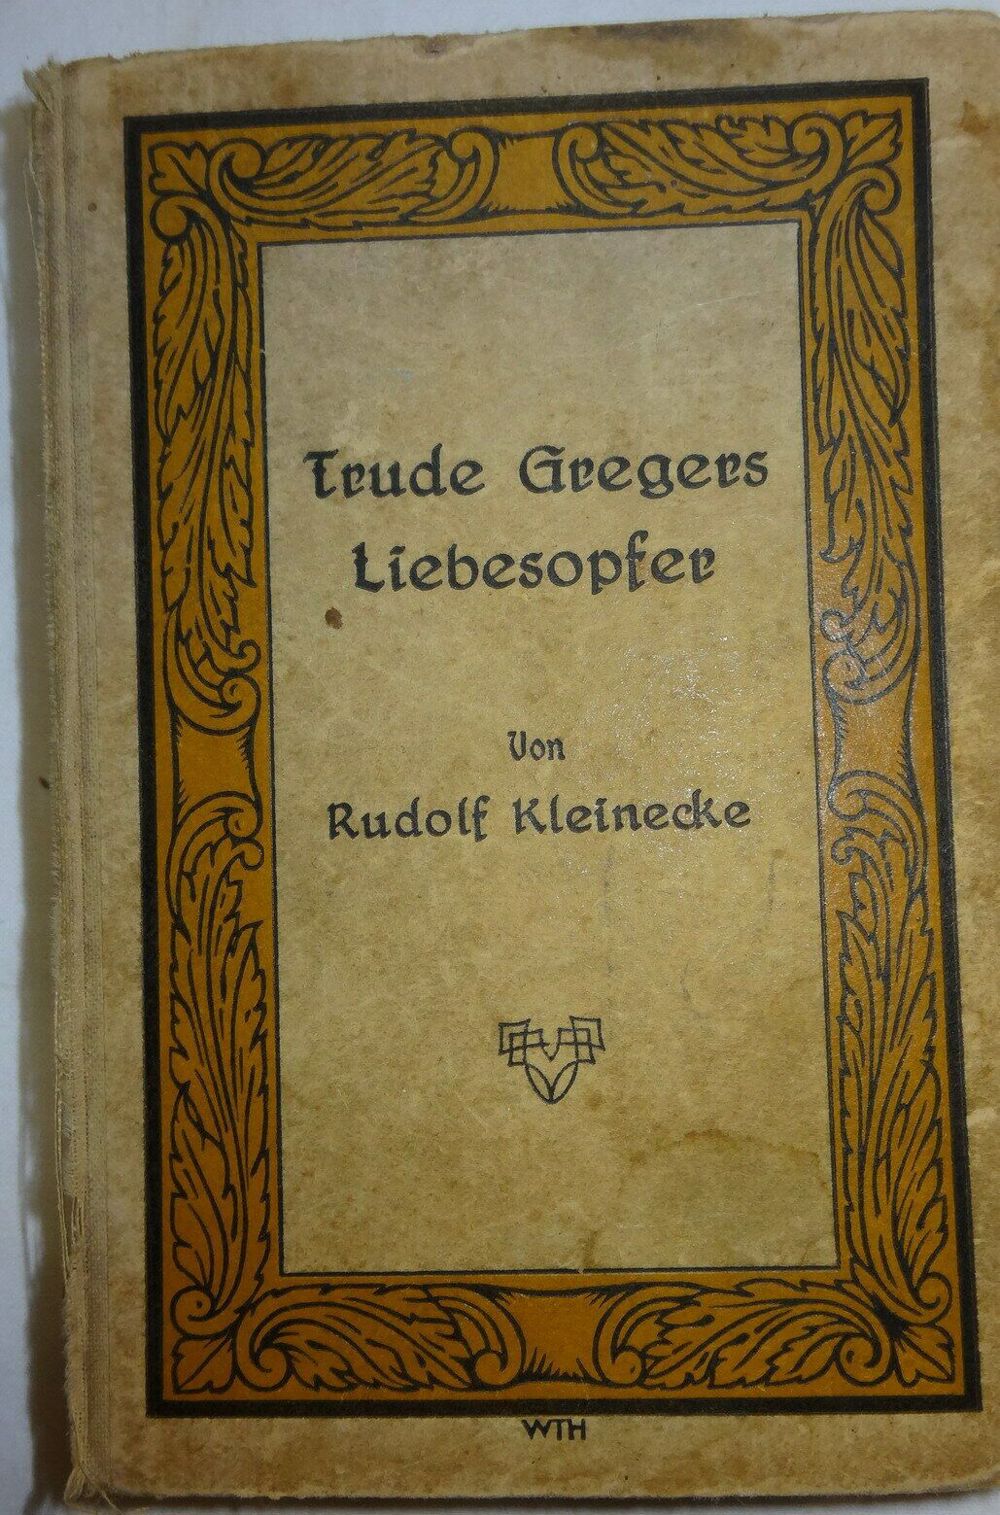 BP Rudolf Kleinecke Trude Gregers Liebesopfer WTH Enßlins Romane 1928 Altdeusch Buch alt 